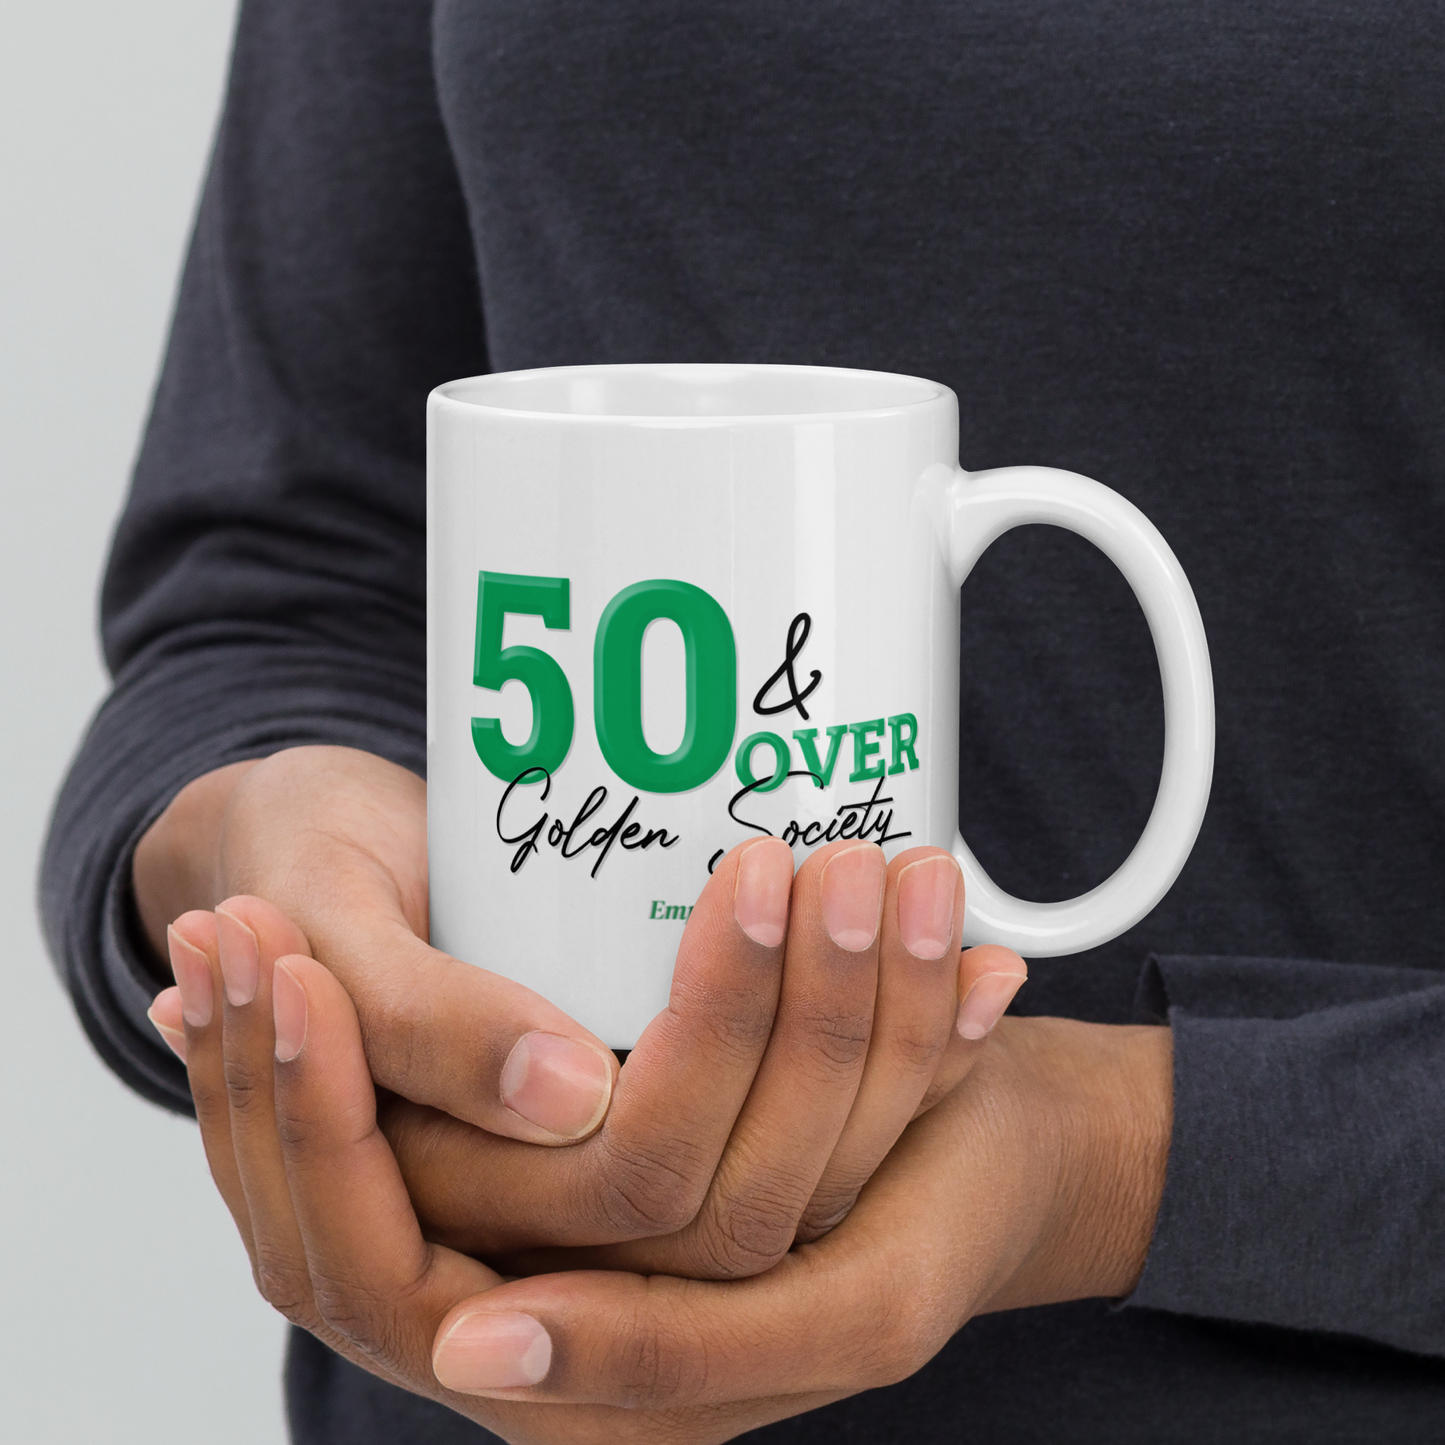 50 & Over Golden Society Mug